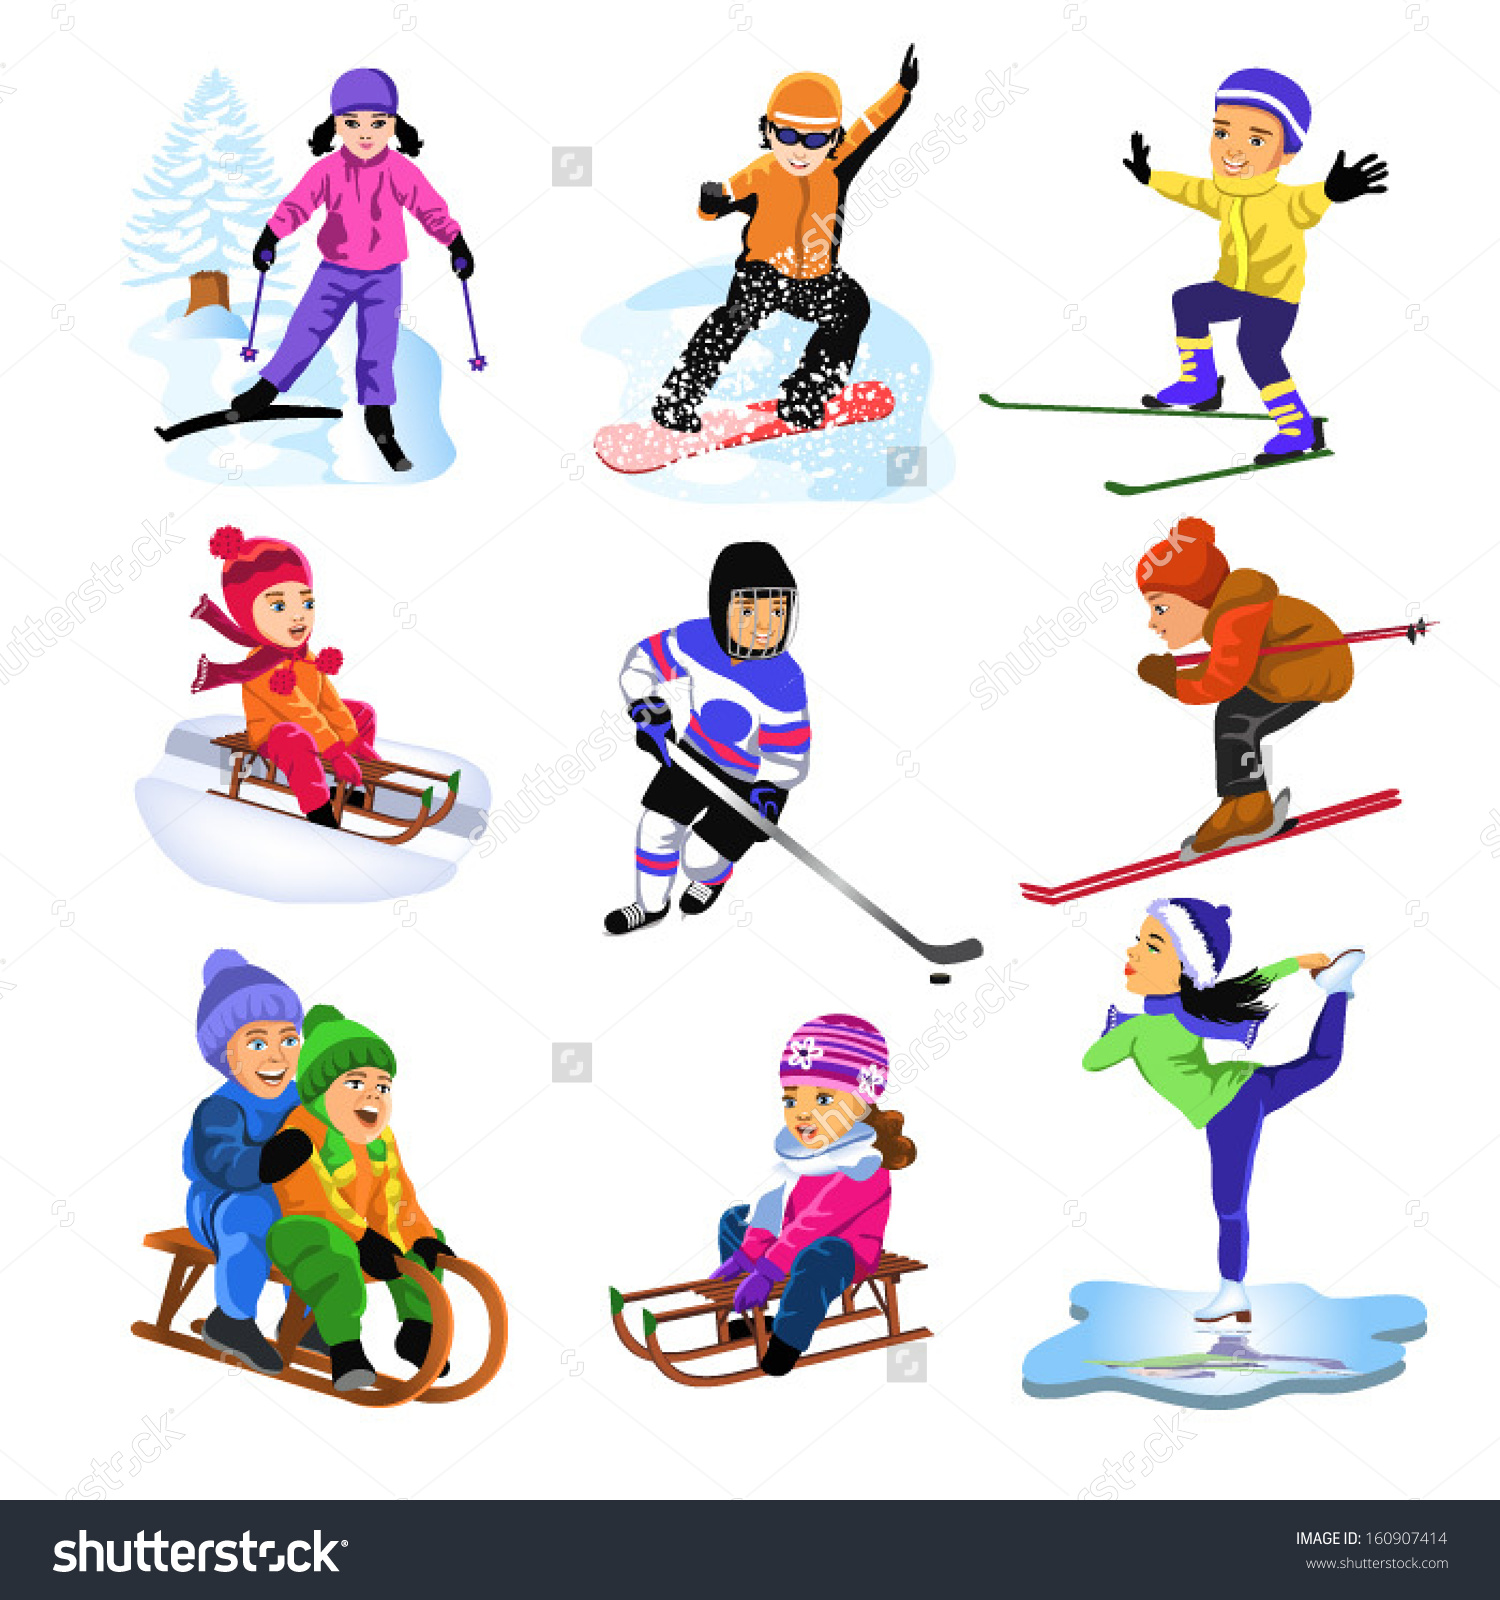 Изображения зимних видов спорта